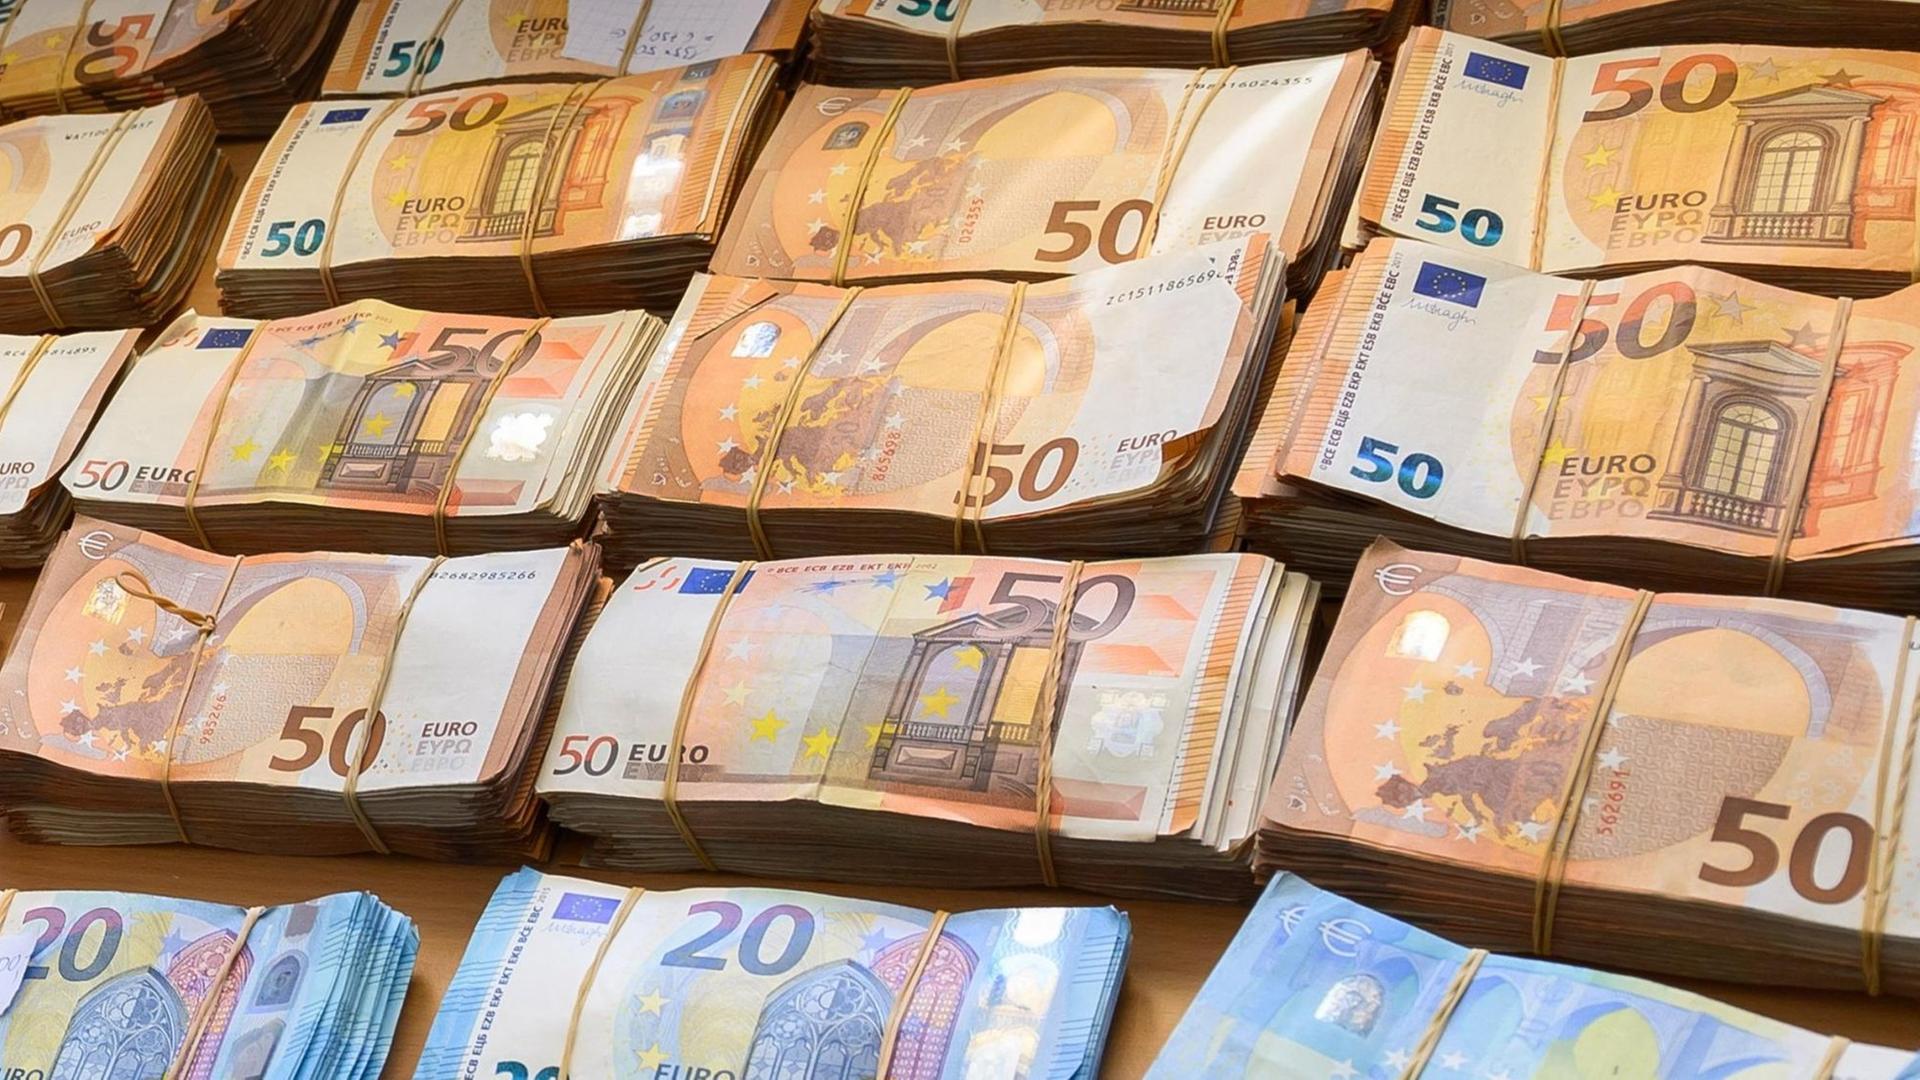 Kampf gegen Geldwäsche - EU-Staaten verständigen sich auf Obergrenze von 10.000 Euro bei Bargeld-Zahlungen